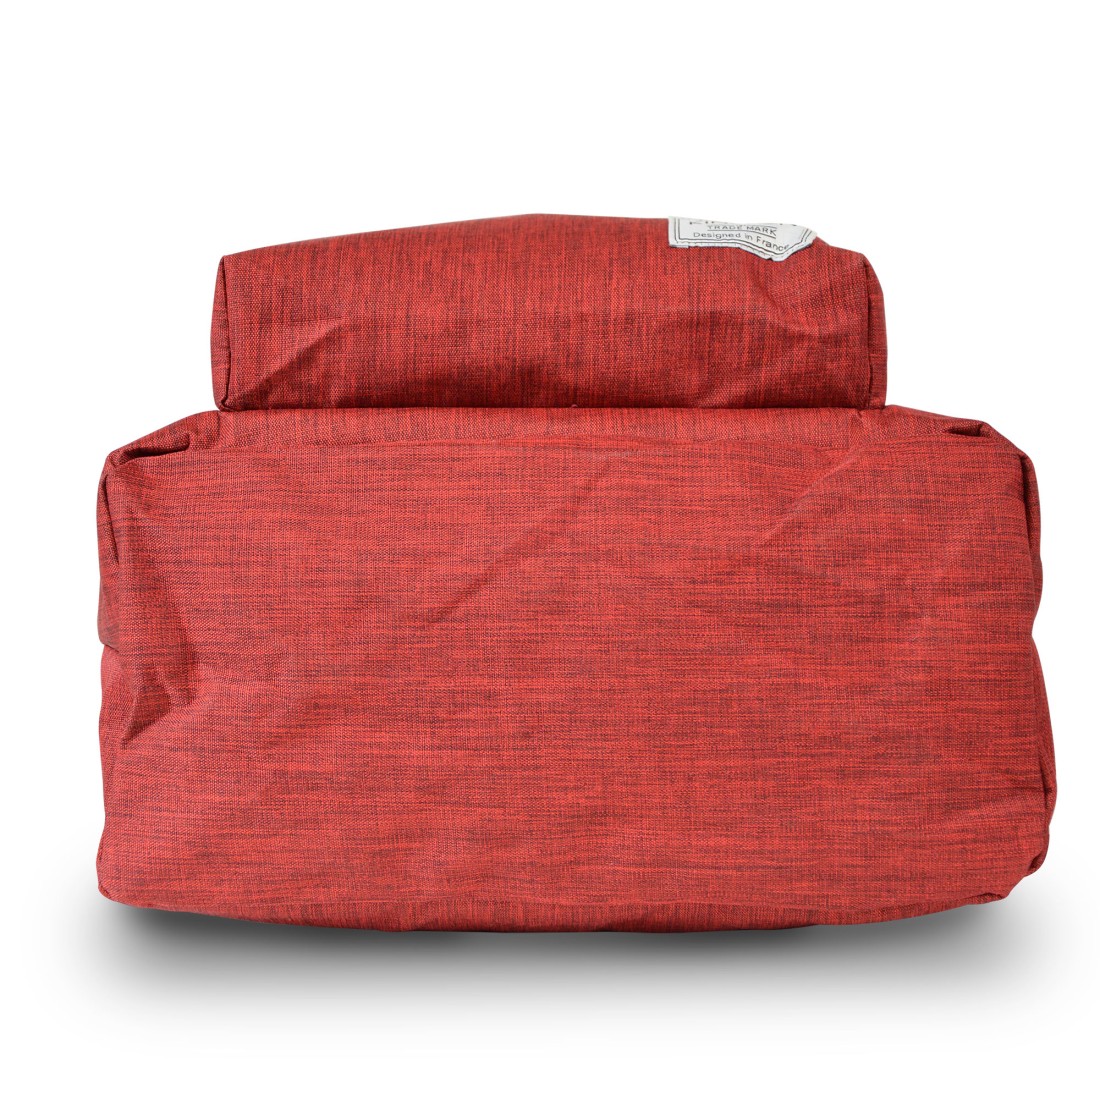 Sac à dos unisexe en Textile rouge de marque Kinston